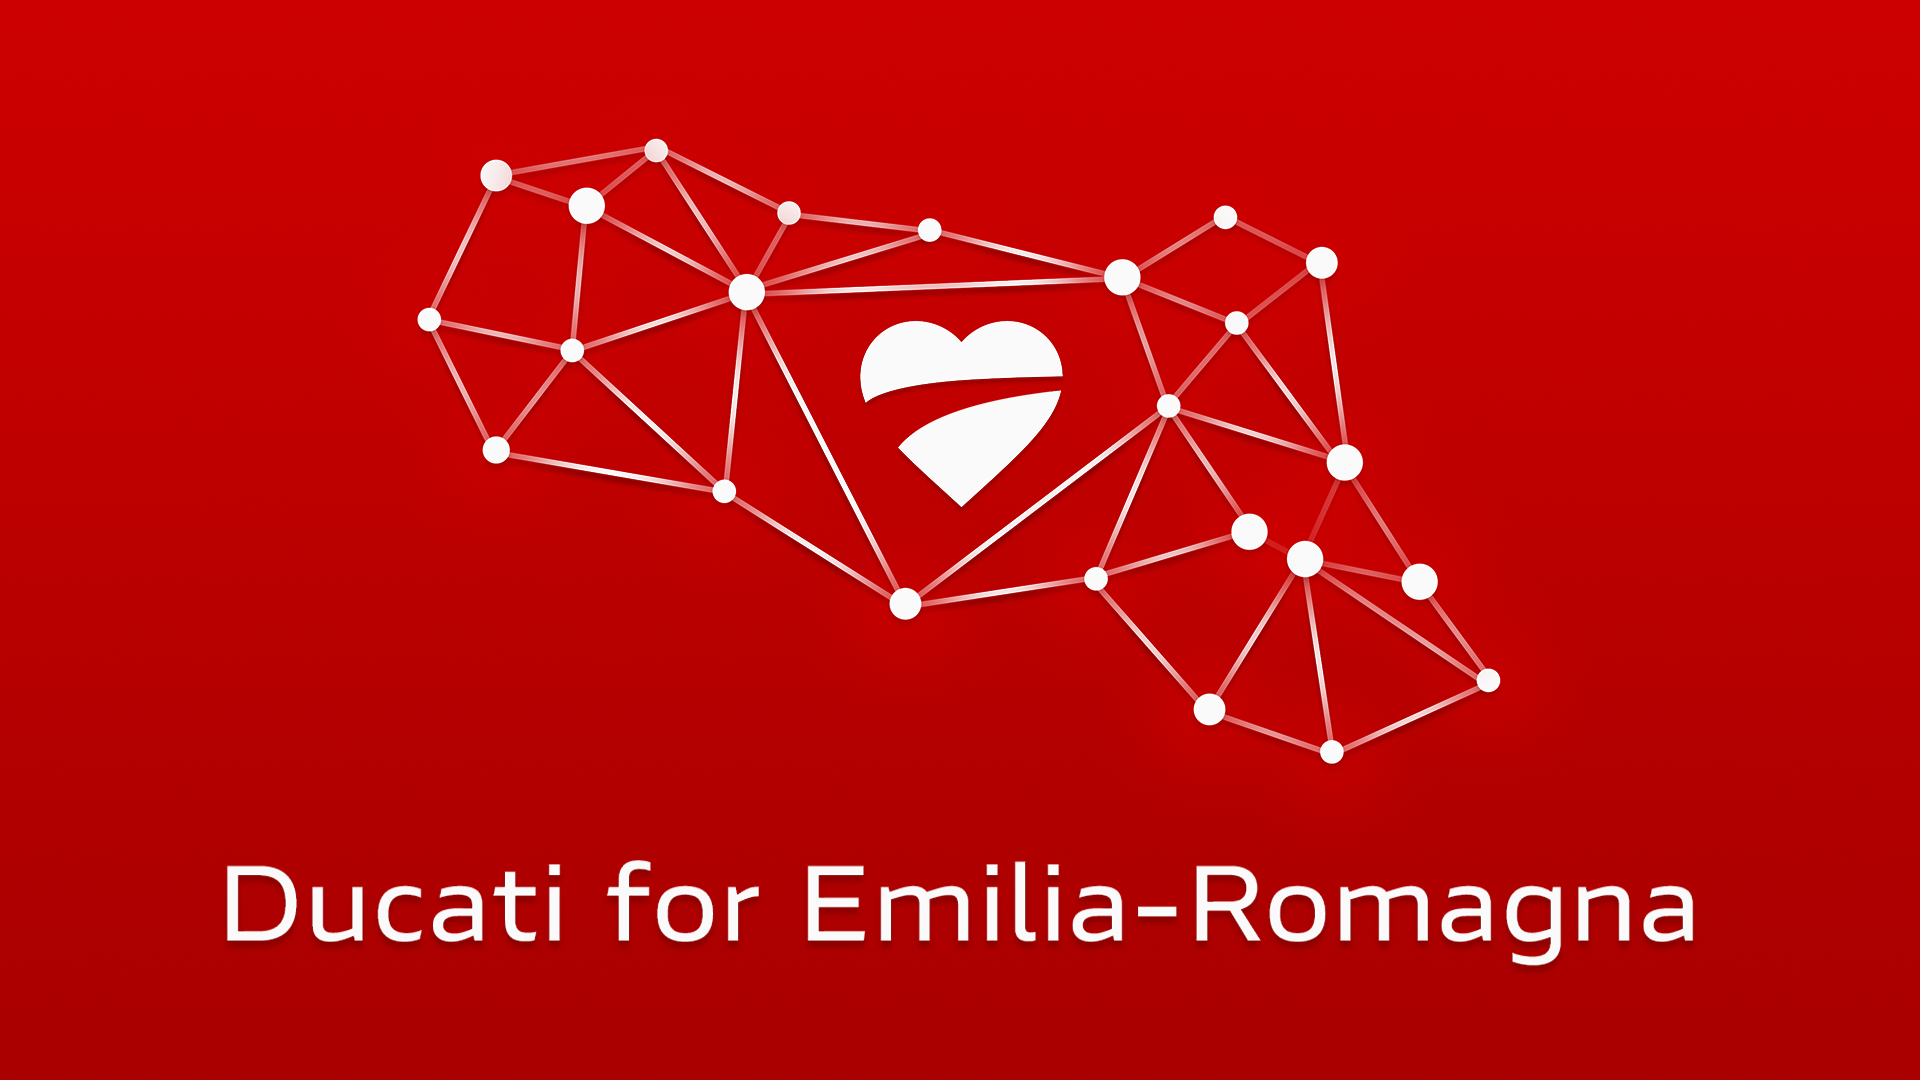 L’Emilia-Romagna è Casa: Ducati supporta la sua Regione